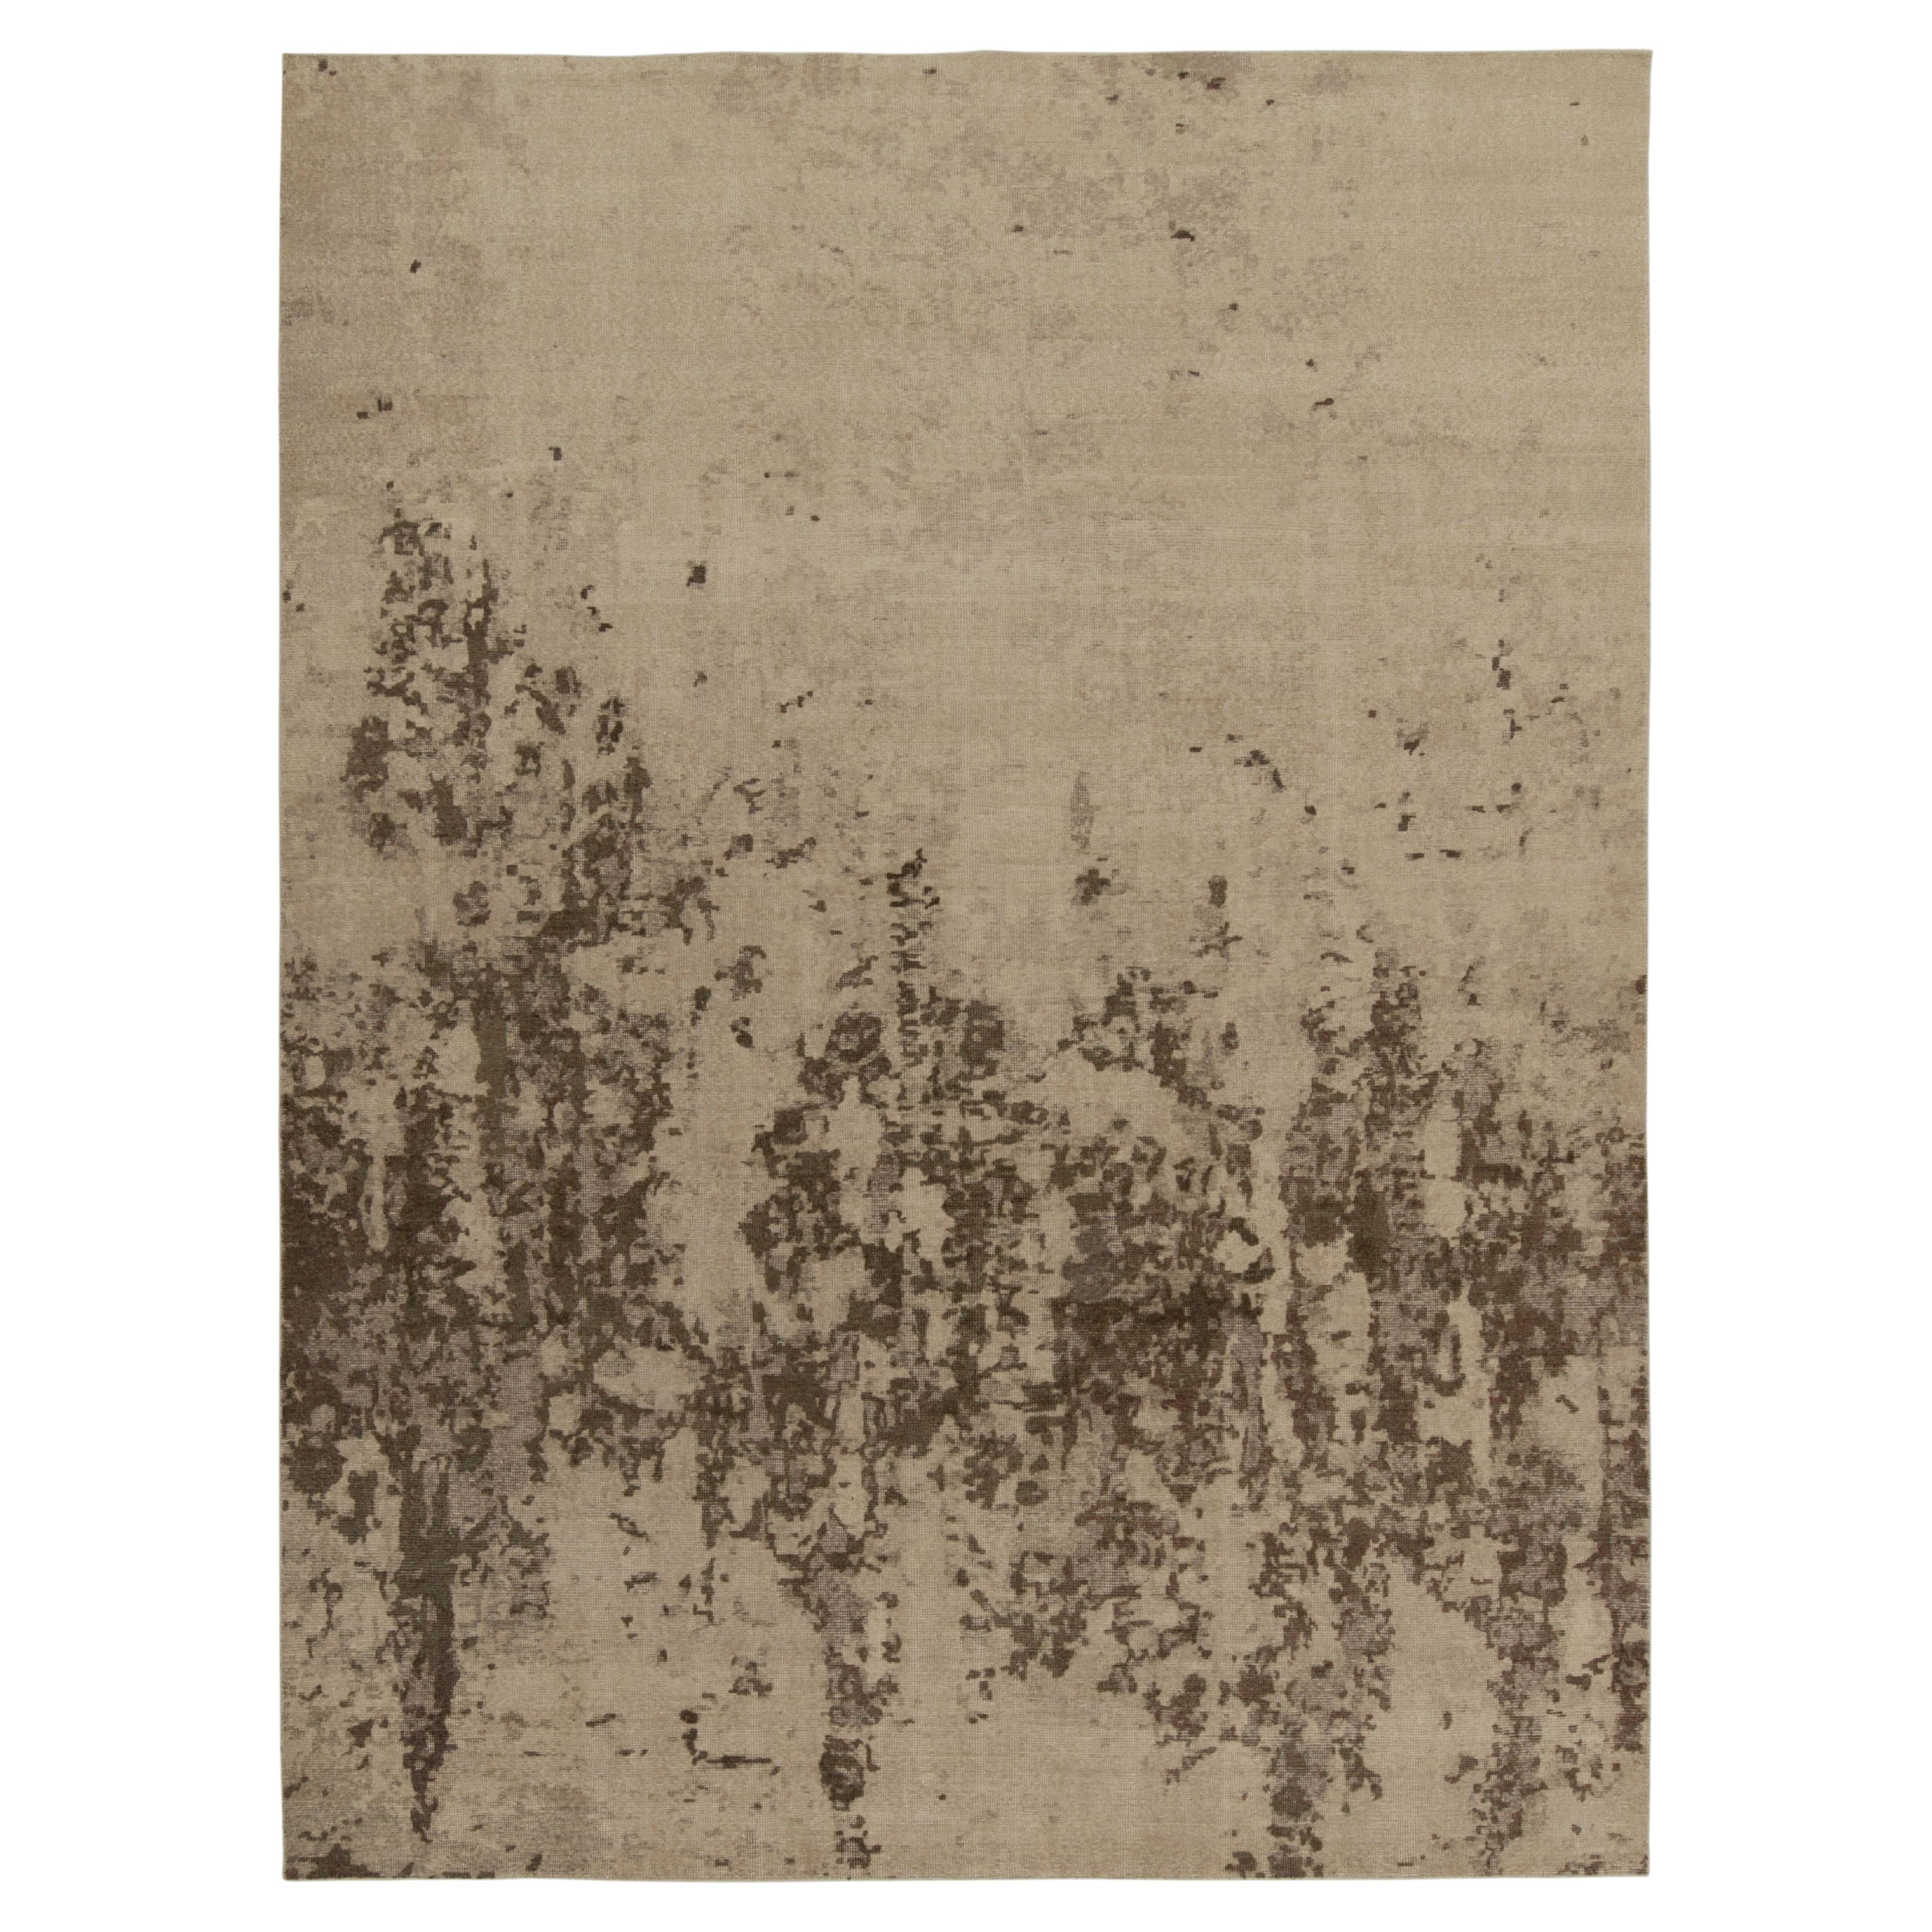 Abstrakter Teppich von Teppich & Kilims in Beige-Braun im Distressed-Stil